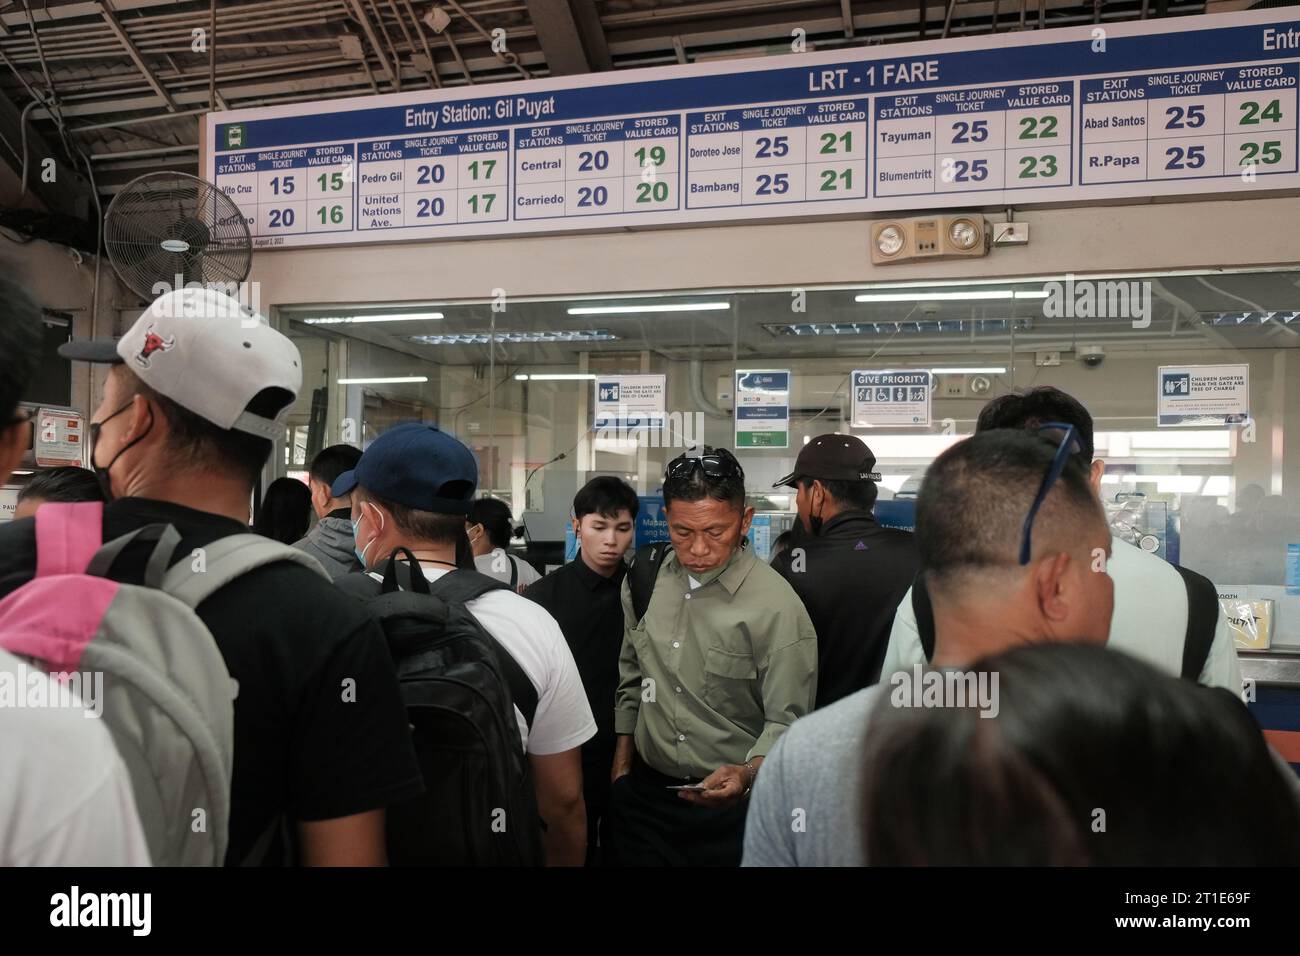 Manille, Philippines : les navetteurs font la queue à l'intérieur de la gare de Gil Puyat pour acheter des billets aller simple à la billetterie du Light Rail Transit 1. Métro bondé. Banque D'Images